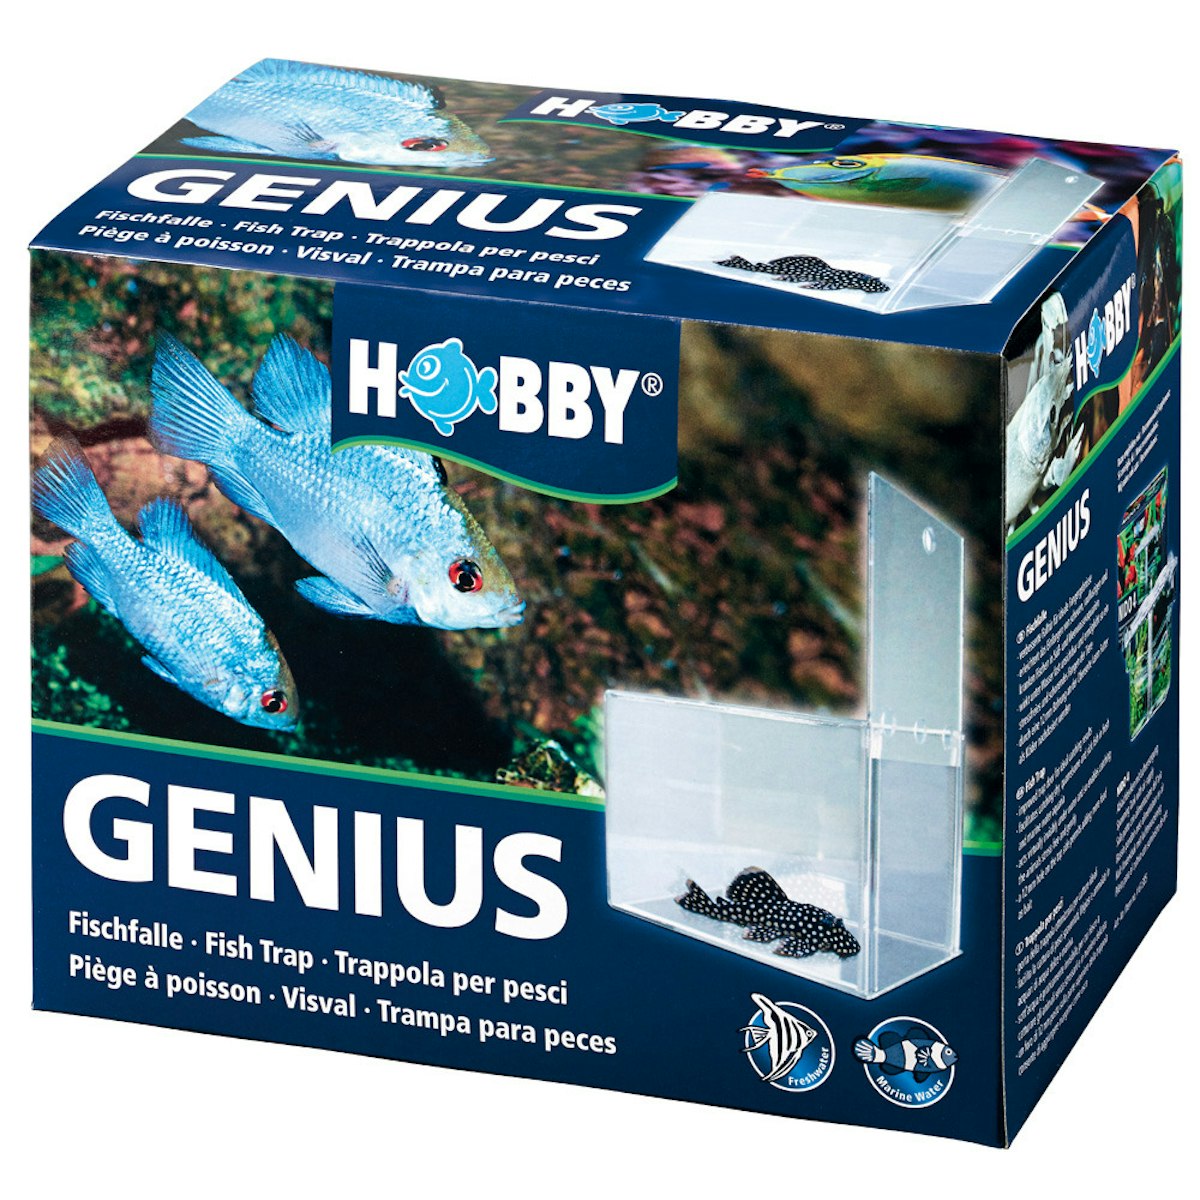 HOBBY Genius Fischfalle Tierpflege von HOBBY